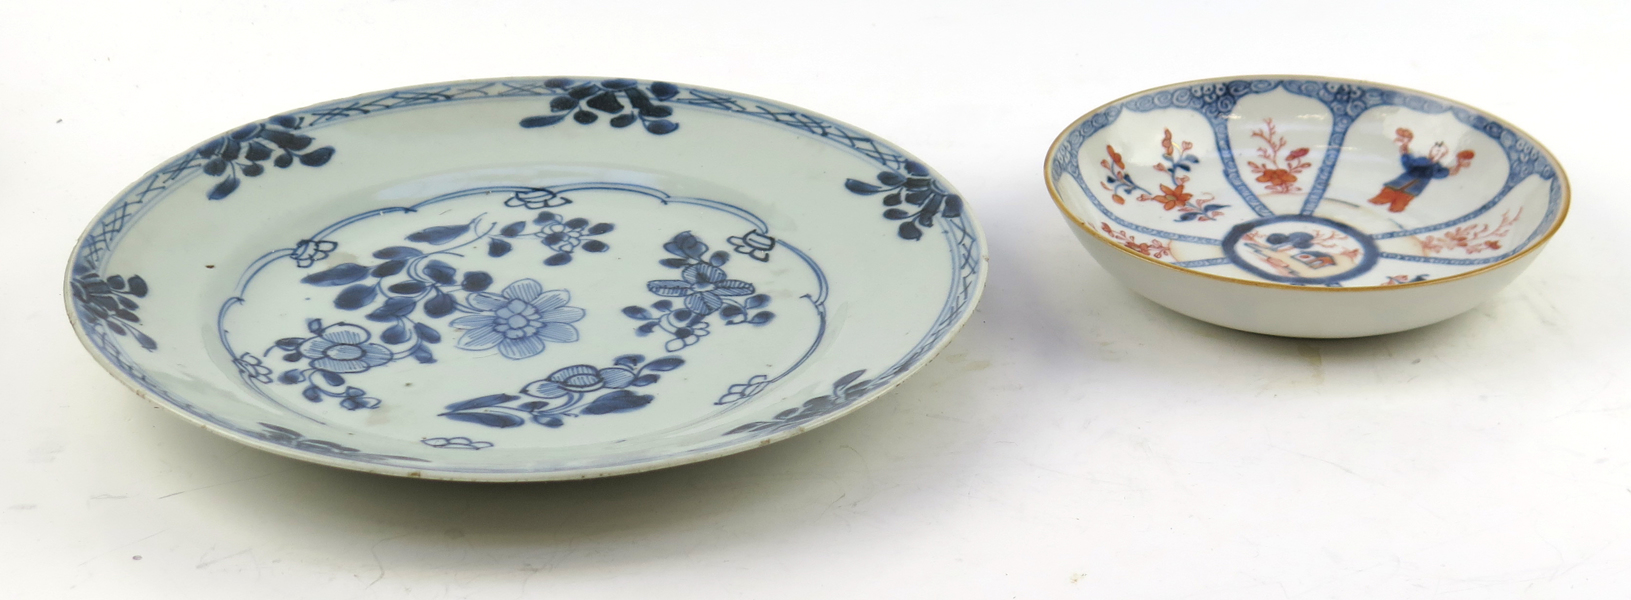 Tallrik samt skål, porslin, Kina, Qianlong/Jiaqing, 17-1800-tal, _18542a_8da22efc9ffb278_lg.jpeg